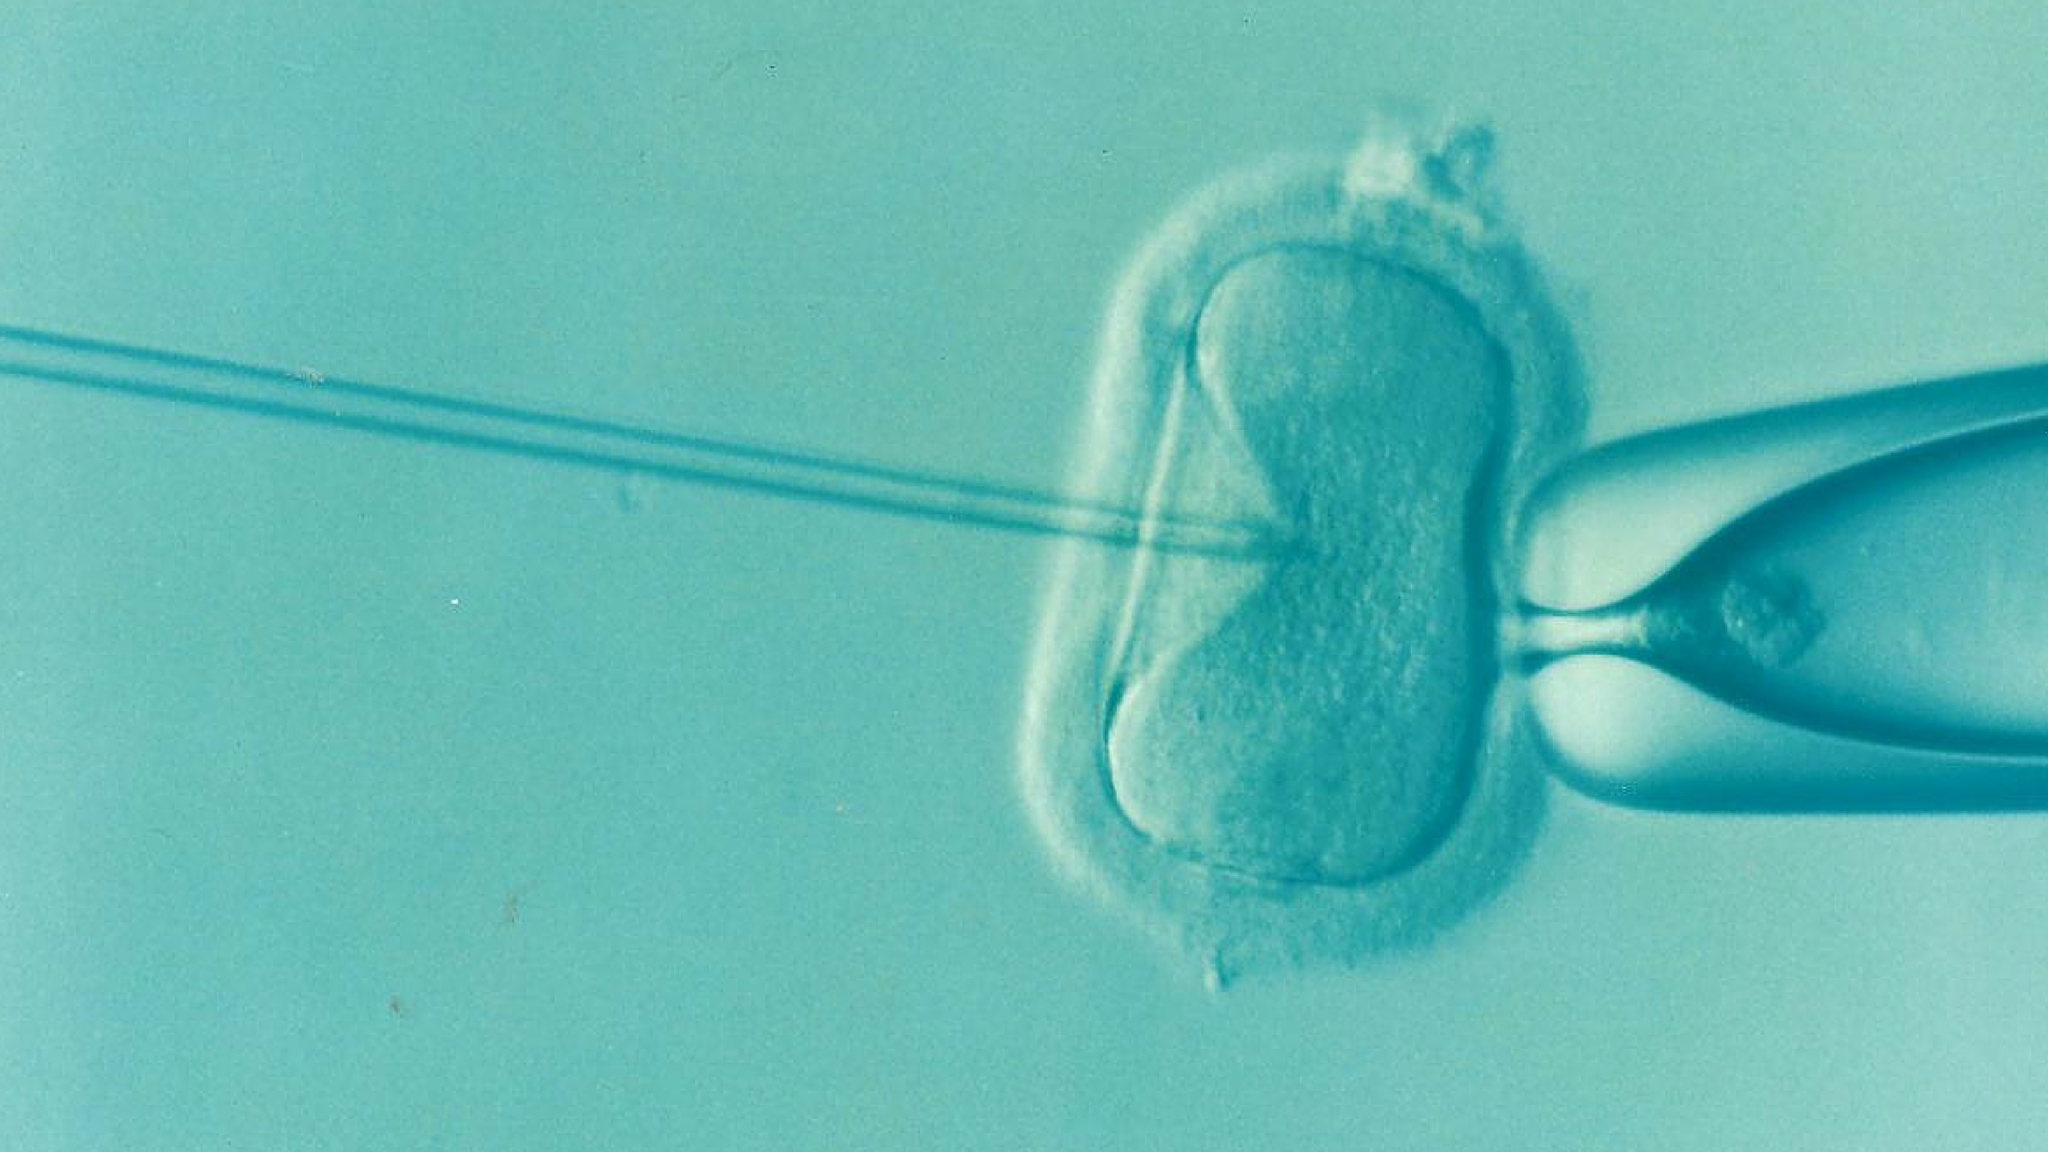 IVF - In Vitro Fertilization